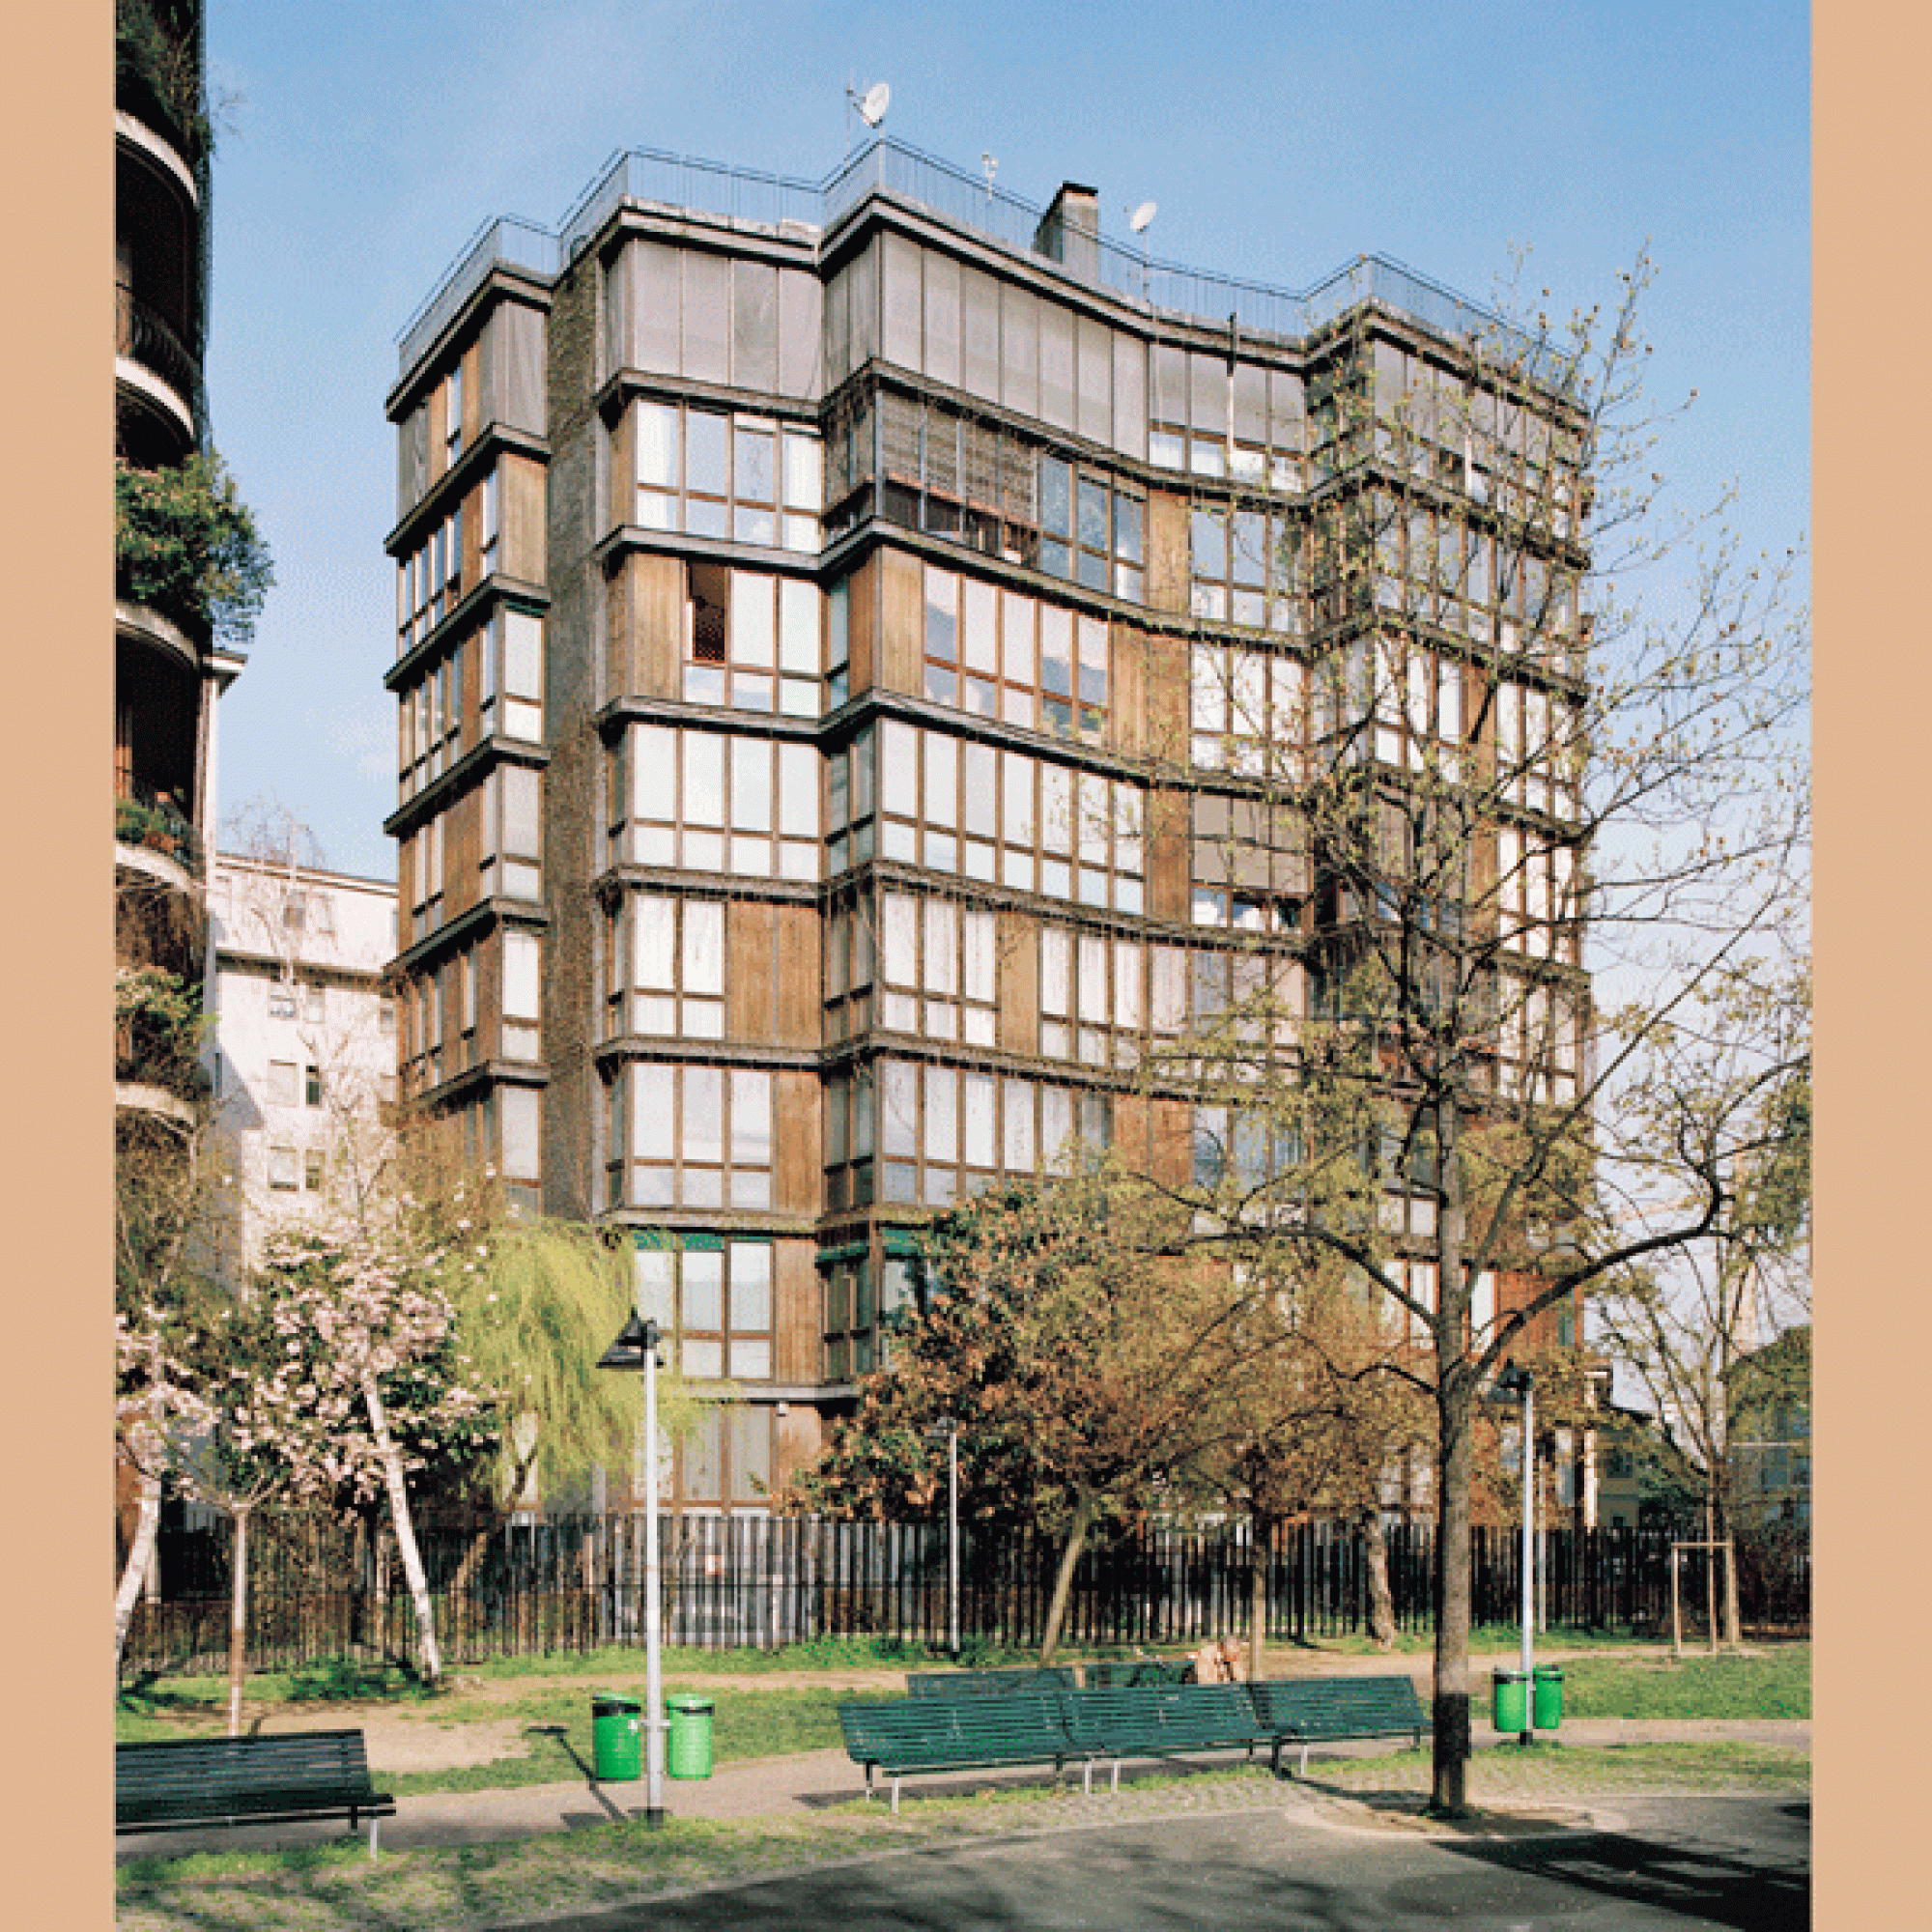 Wohnhaus in Mailand von Angelo Mangiarotti und Bruno Morassuti. (Bilder: Werner Feiersinger)